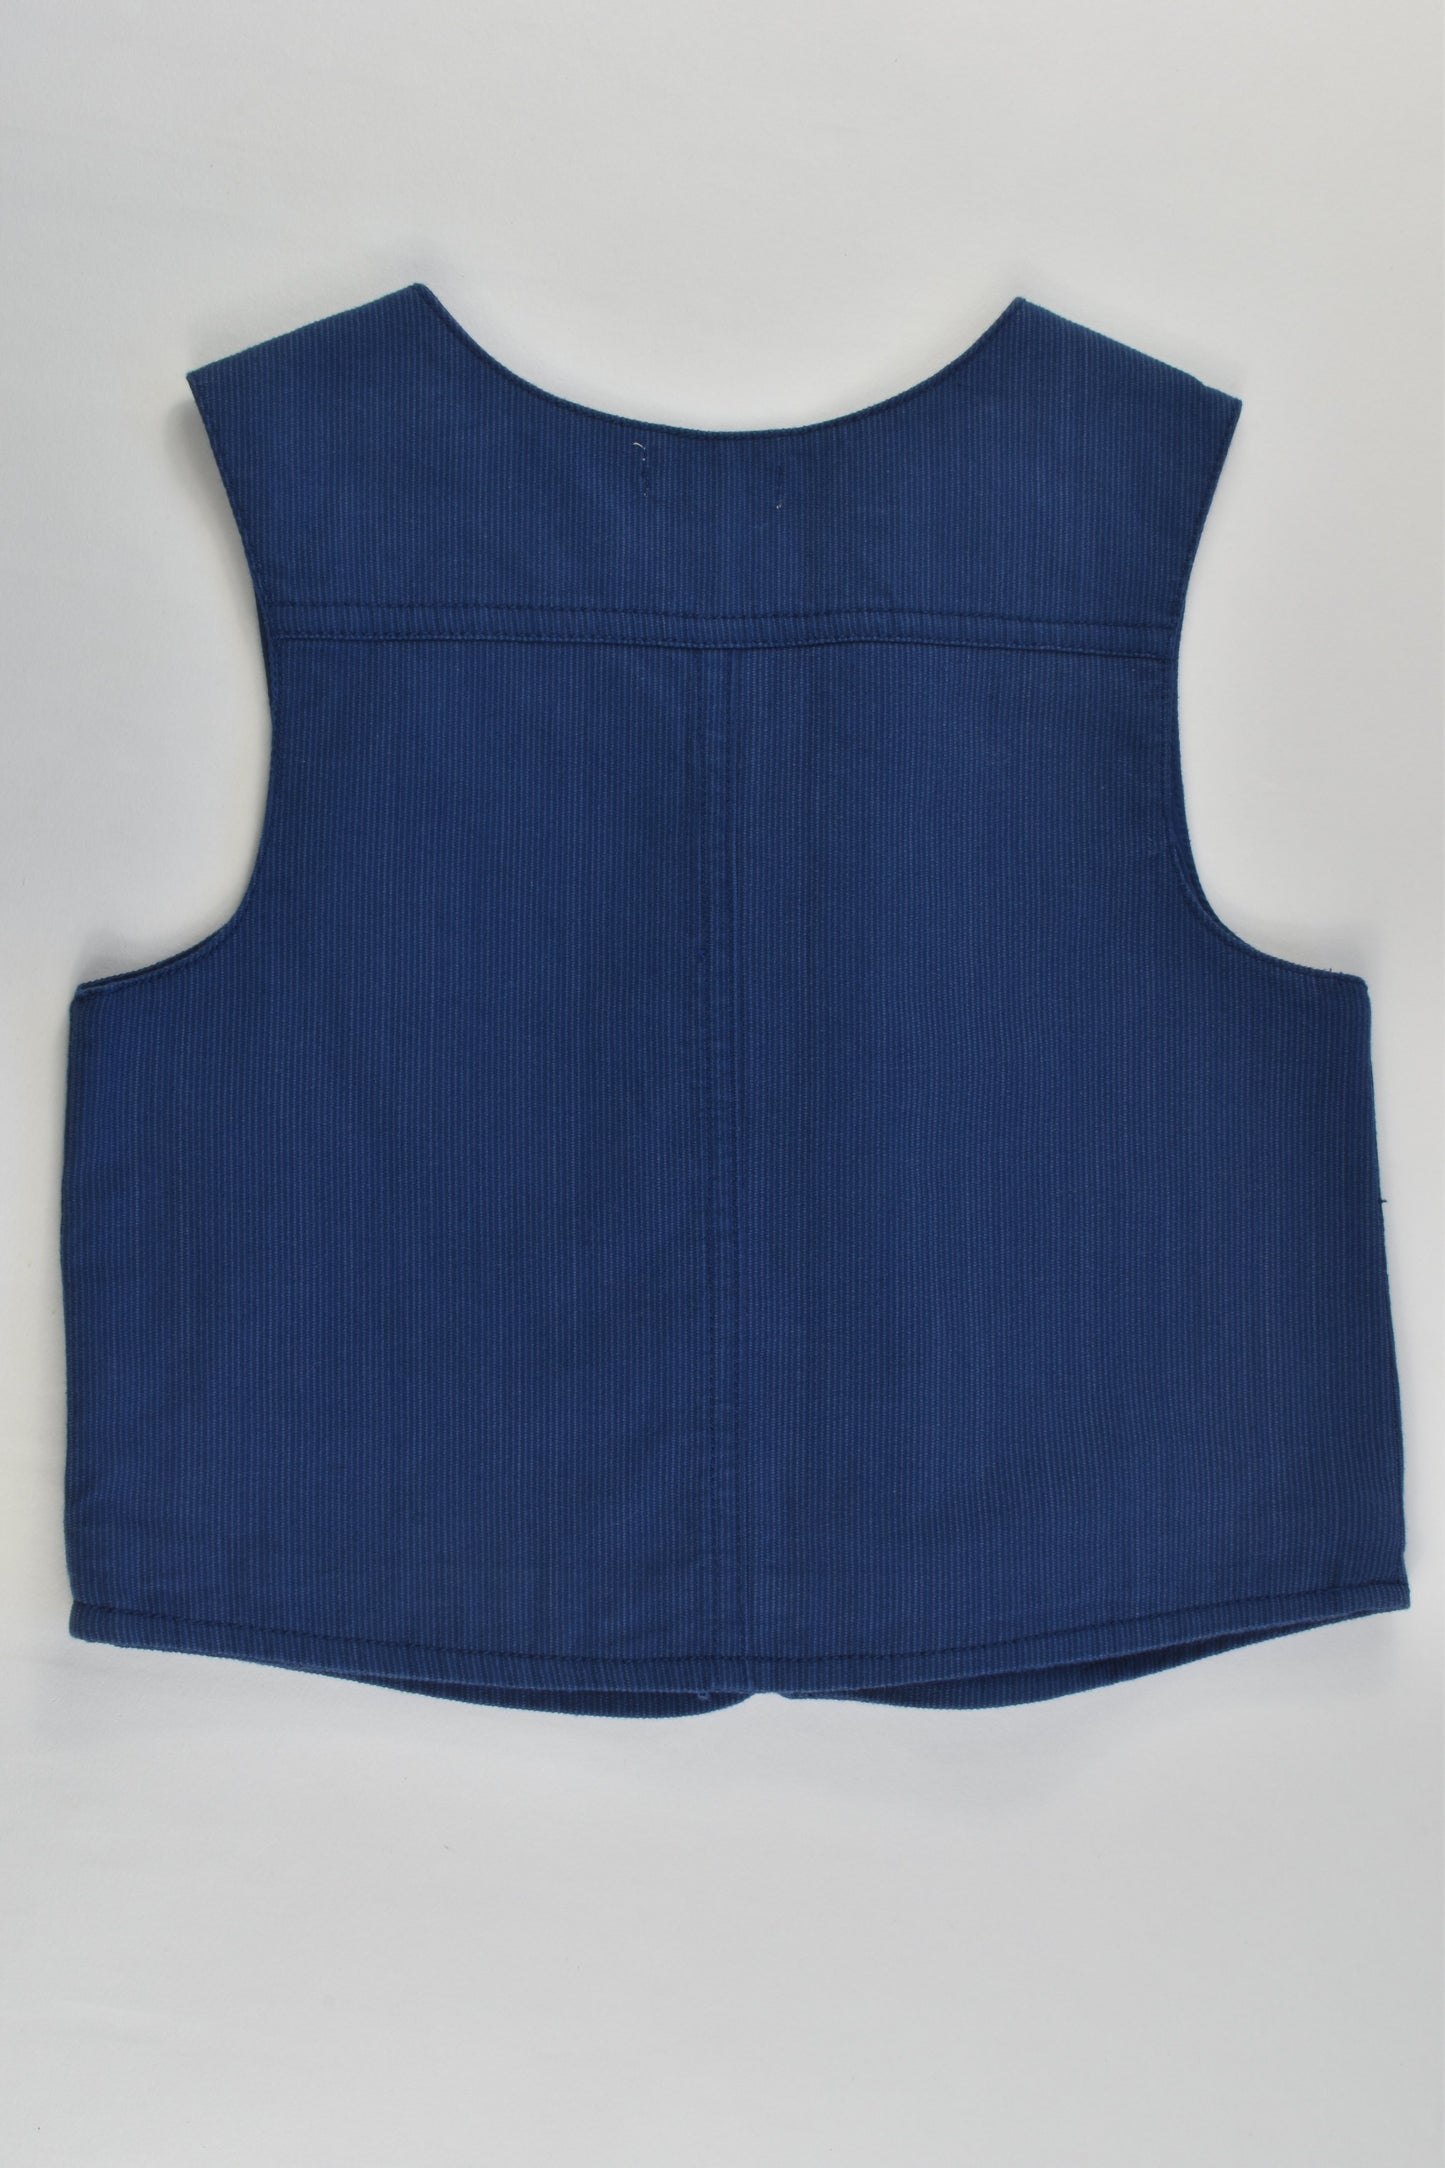 Purebaby Size 2 (18-24 months) Vest